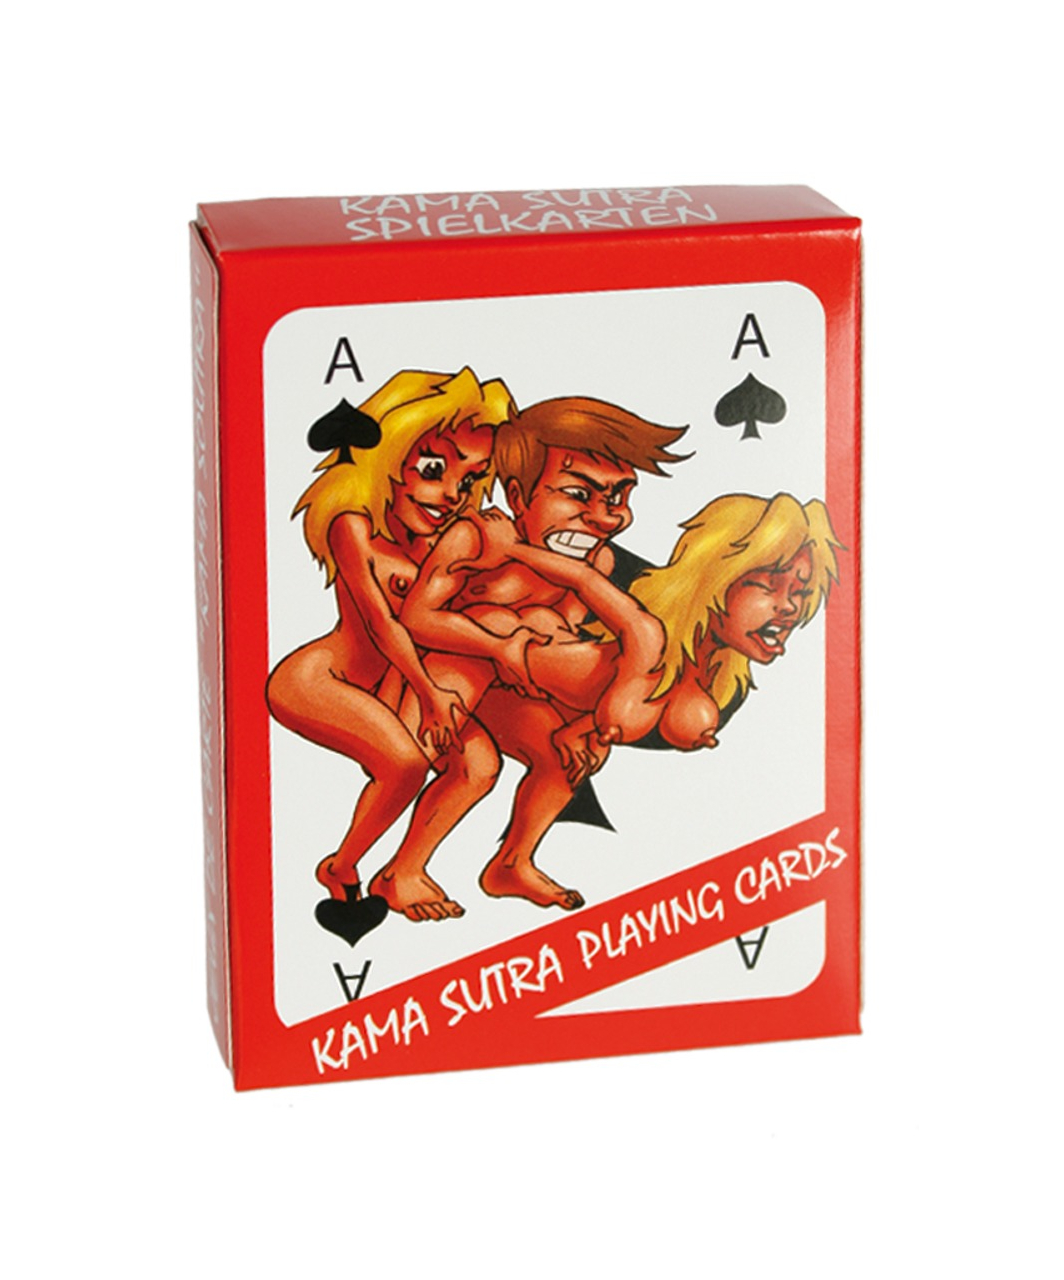 OV spēļu kārtis ar seksa karikatūrām